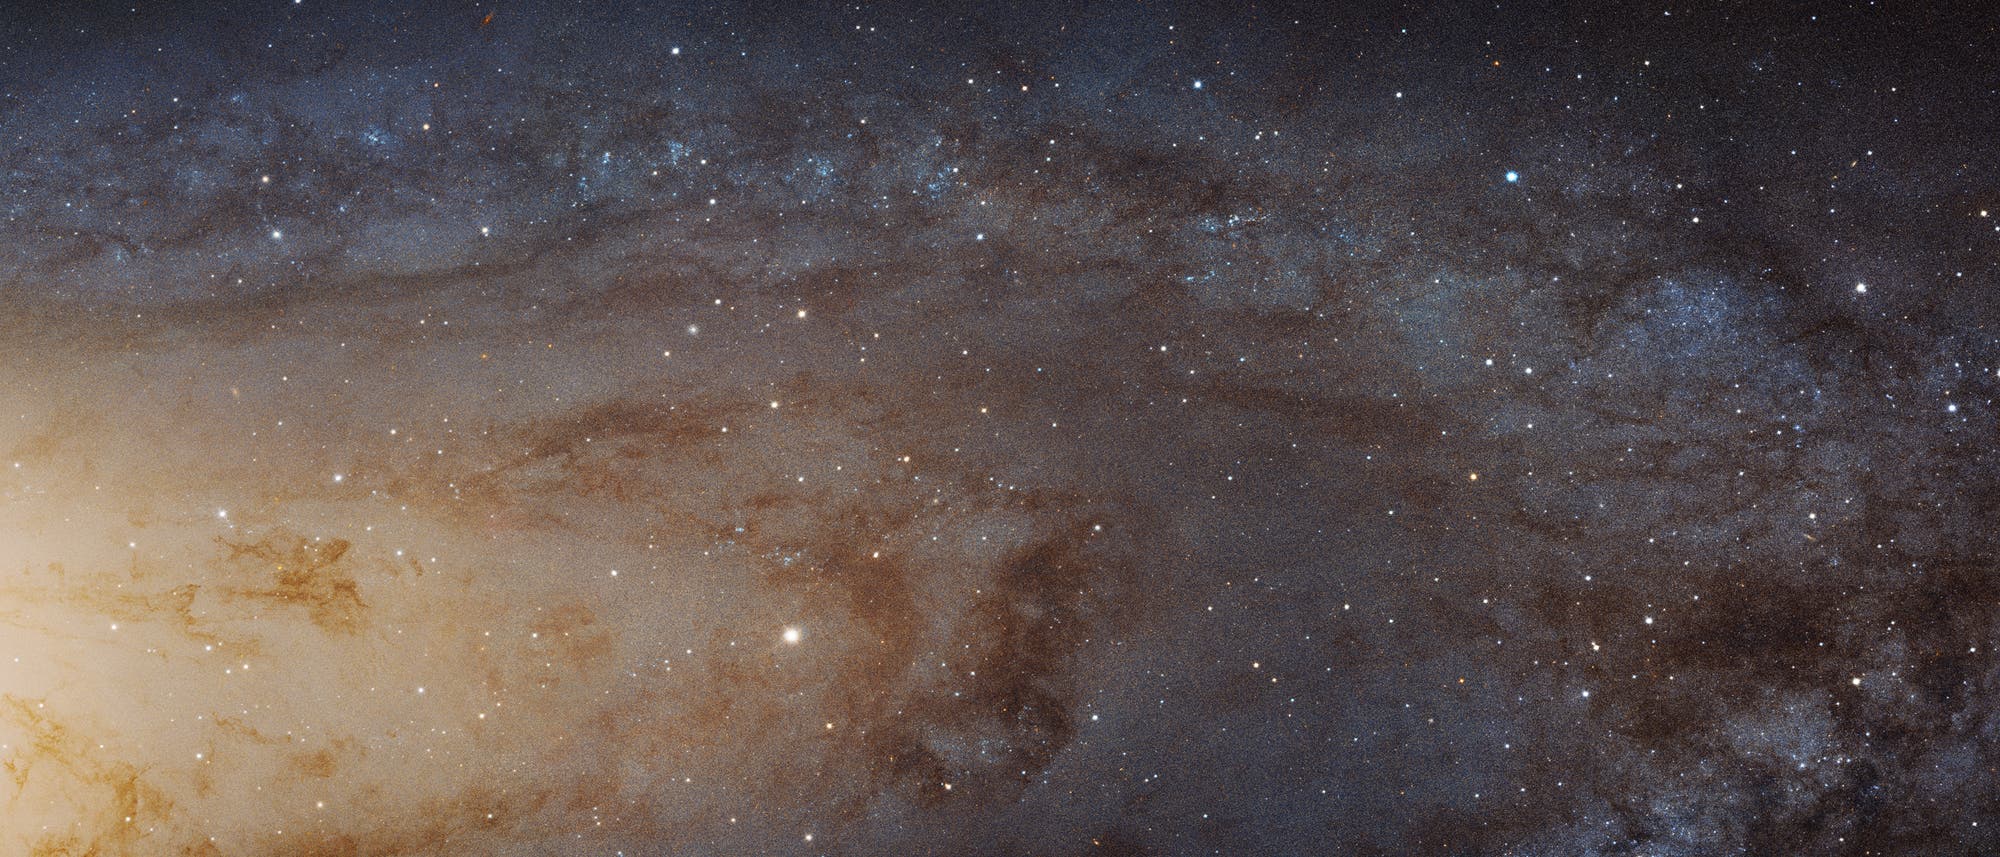 Dieser Ausschnitt der Andromedagalaxie wurde vom Hubble-Weltraumteleskop aufgenommen. Allerdings kann auch das Hubble-Weltraumteleskop nicht auf Exoplanetenjagd in unserer benachbarten Spiralgalaxie gehen. 